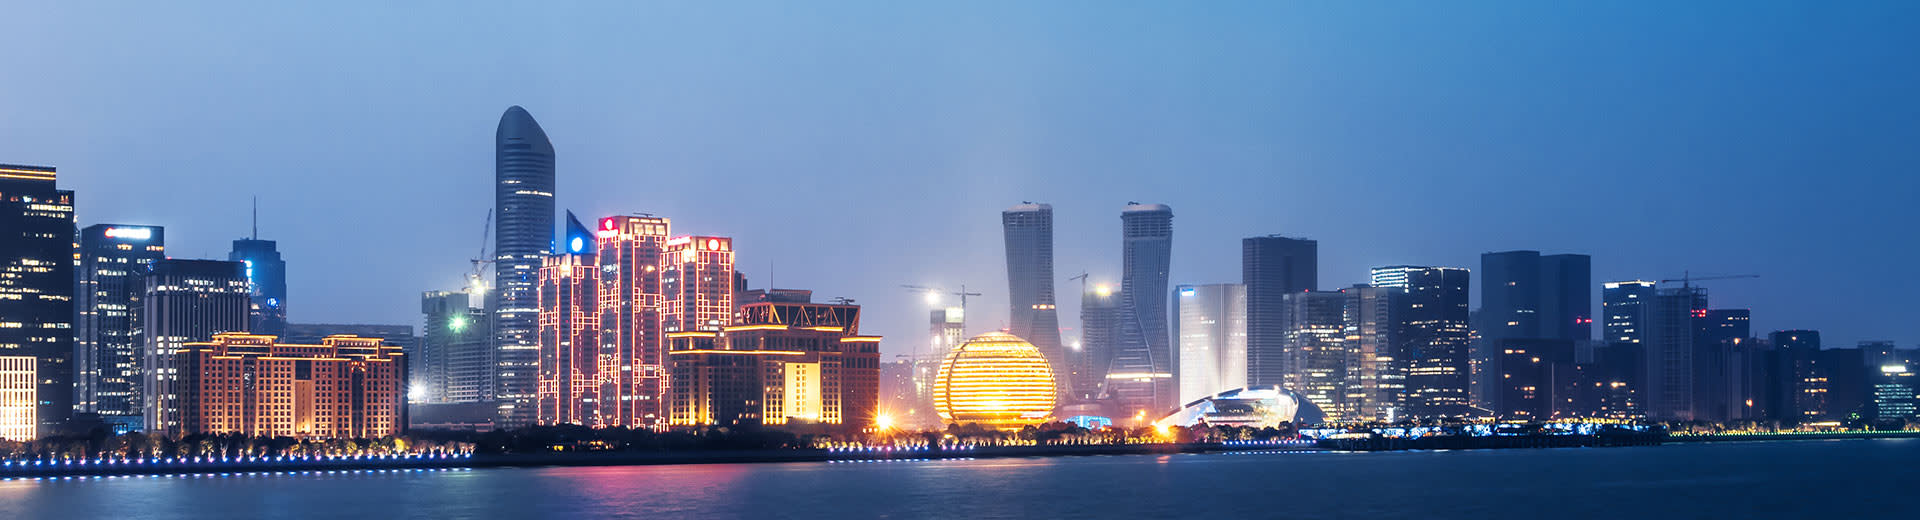 Eine funkelnde Auswahl an Wolkenkratzern beleuchtet den Nachthimmel in Hangzhou.